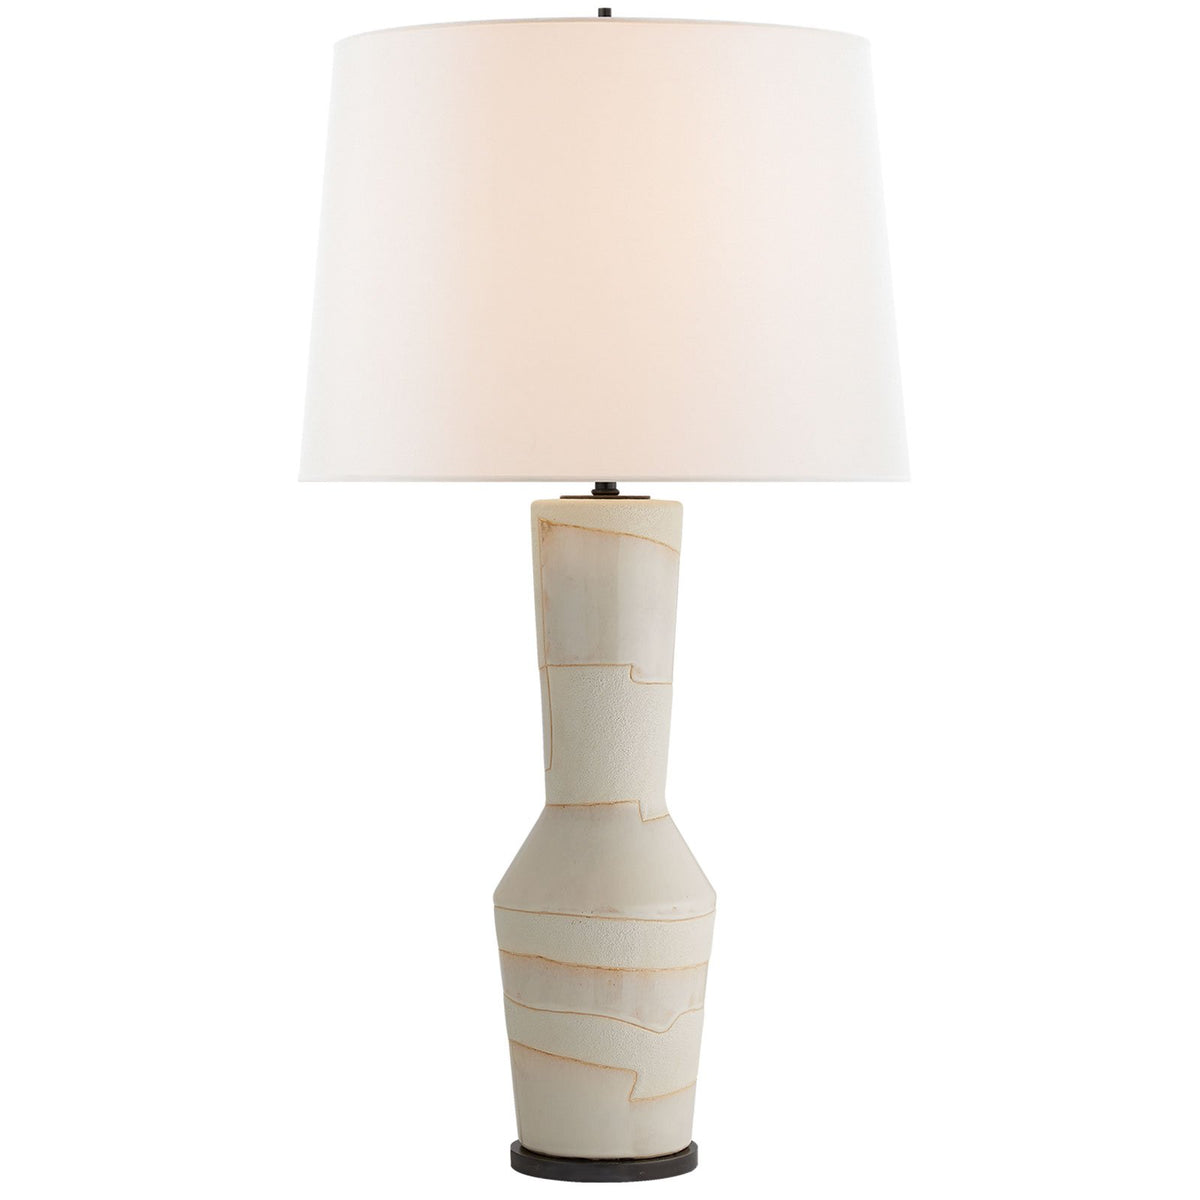 Porous White Alta Table Lamp